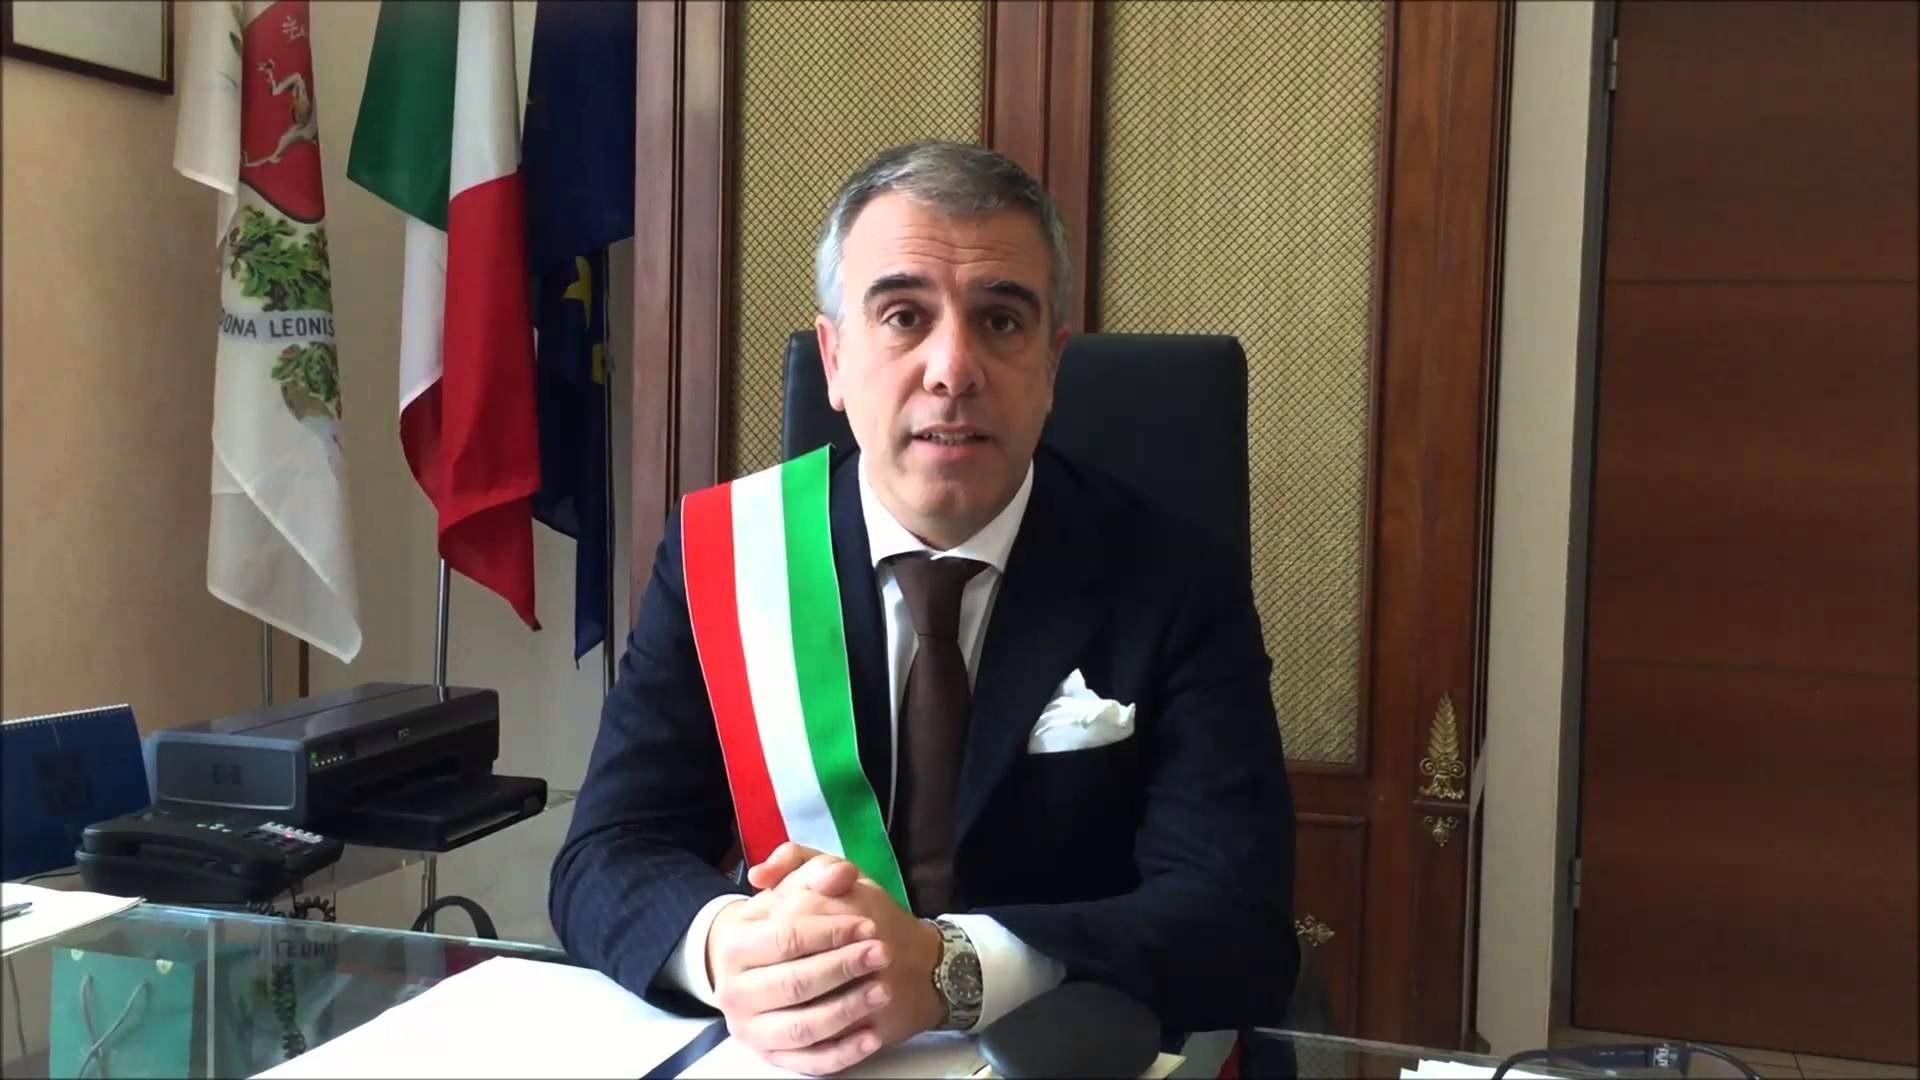 Il sindaco Bardone commenta le dimissioni del vice Silvestri: “Mi hanno sorpreso e colto impreparato”